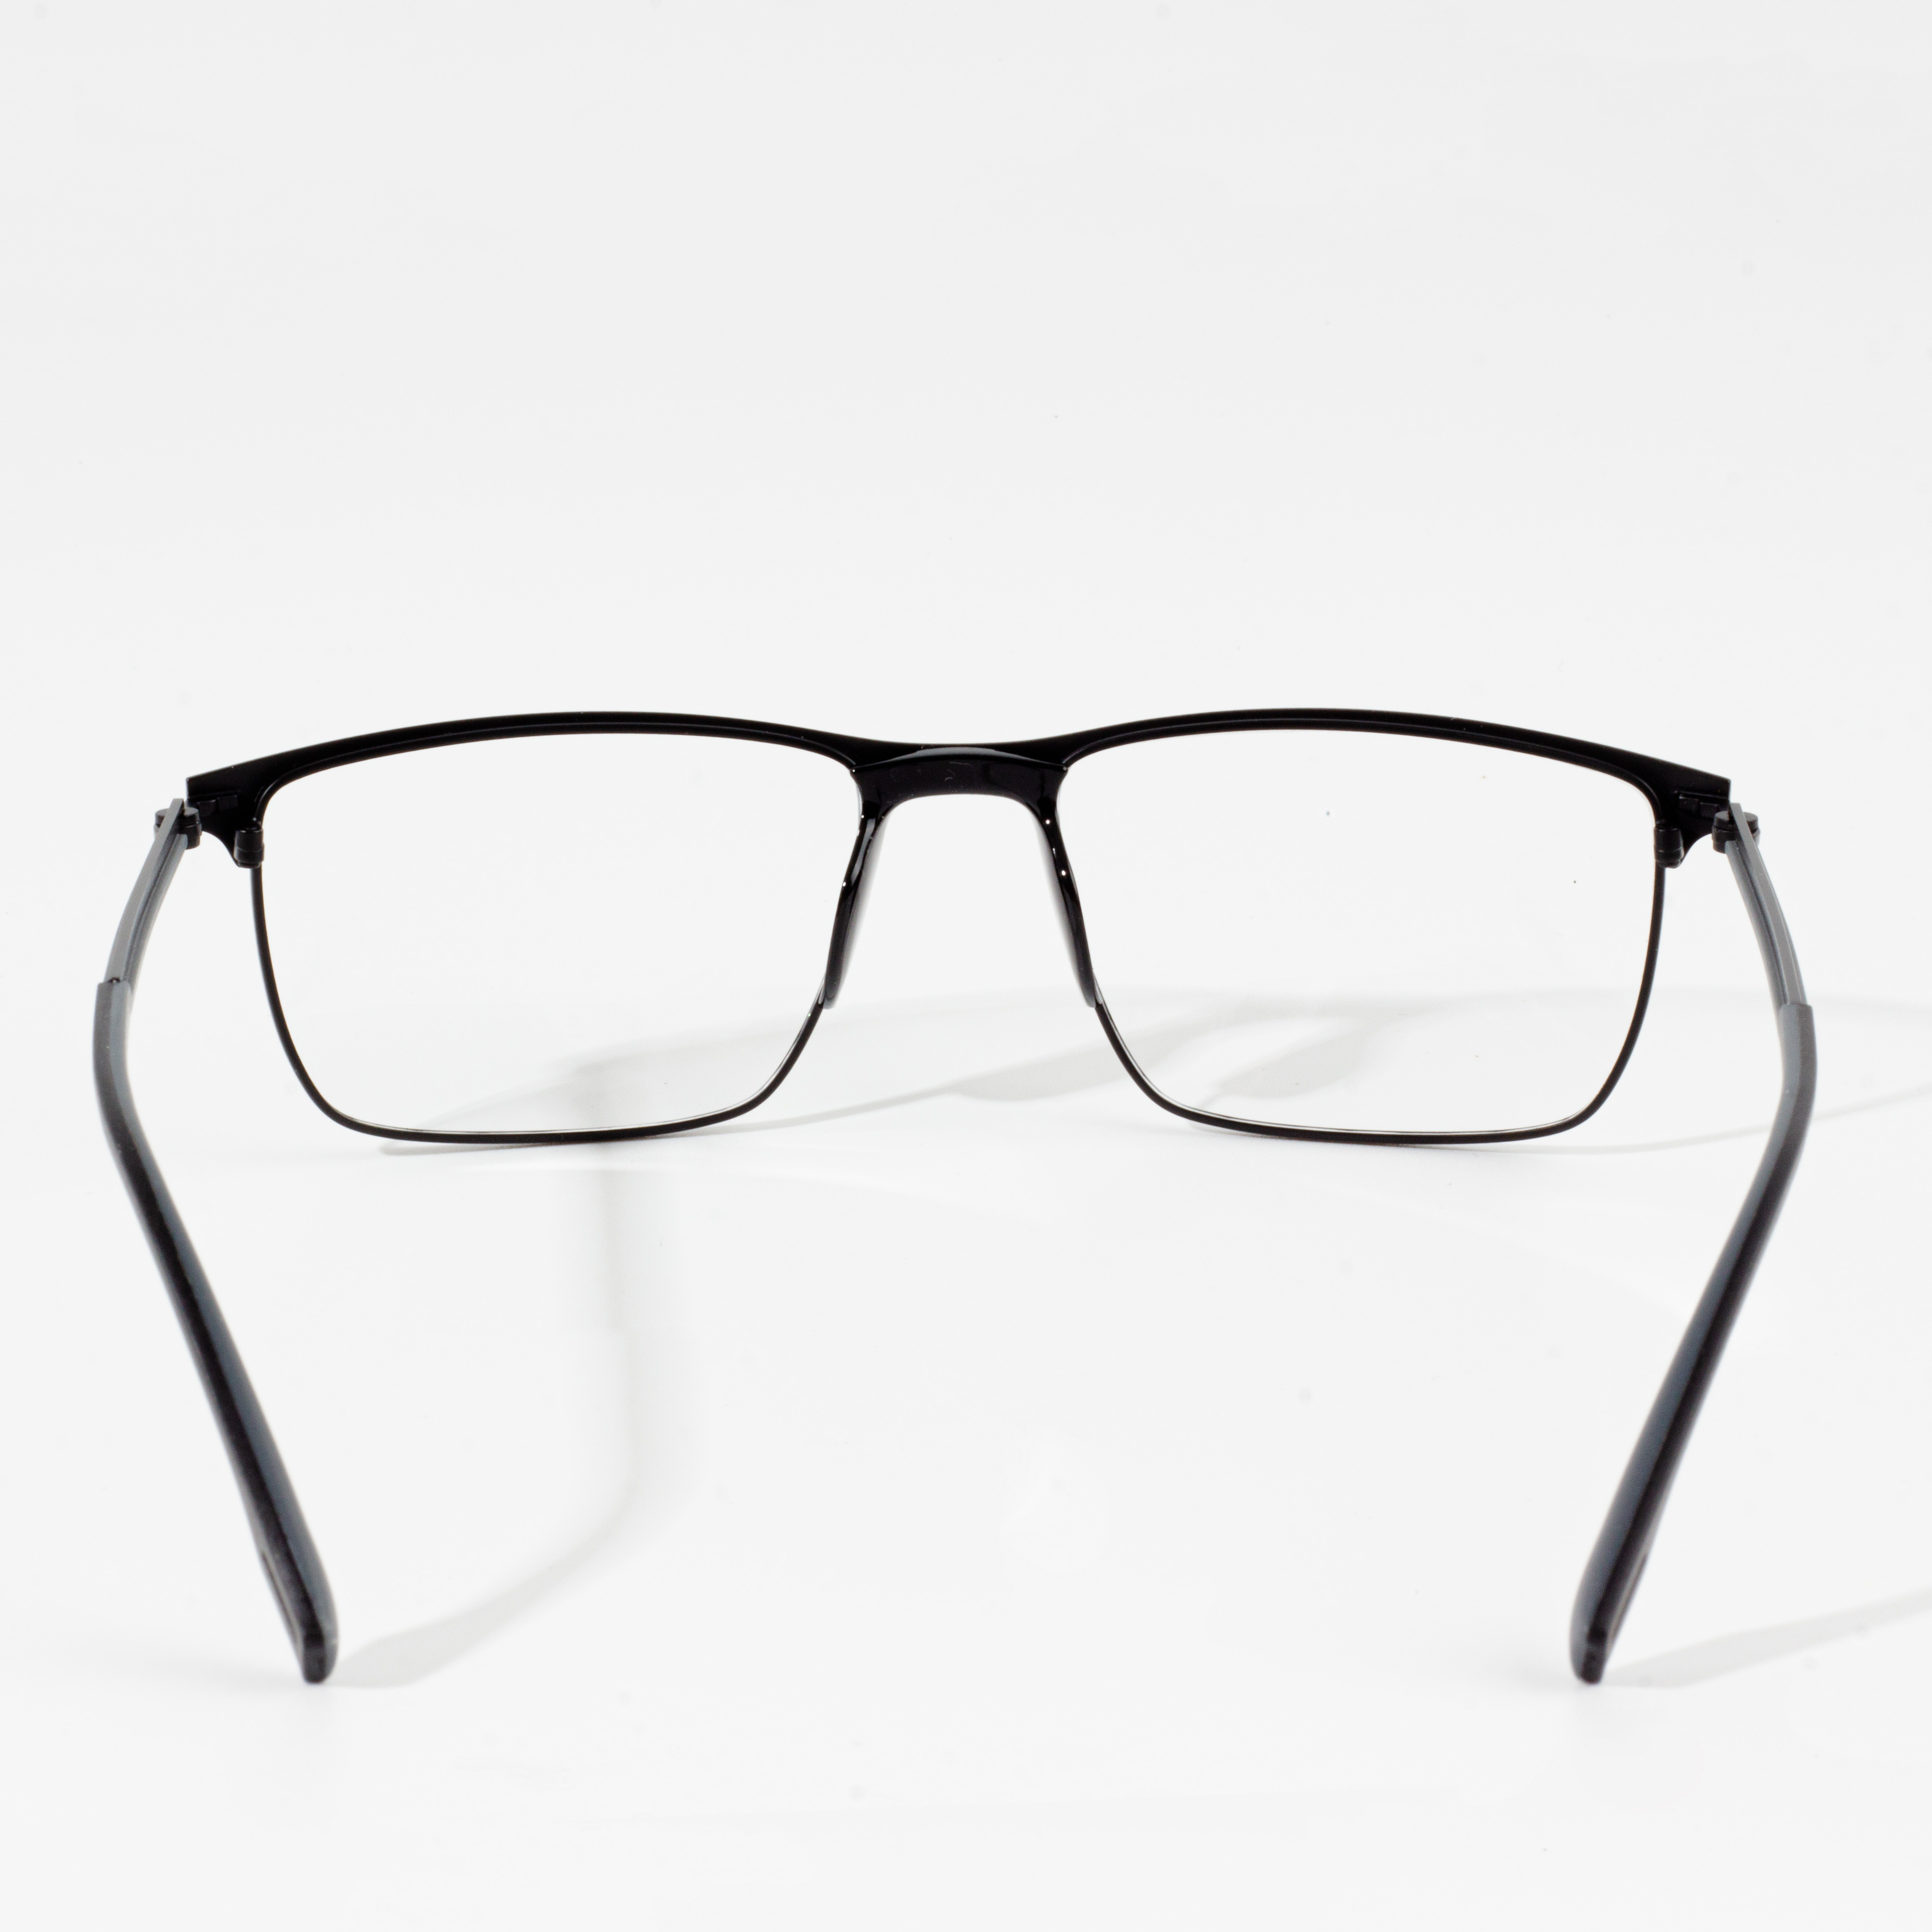  Glasses Frame For Men